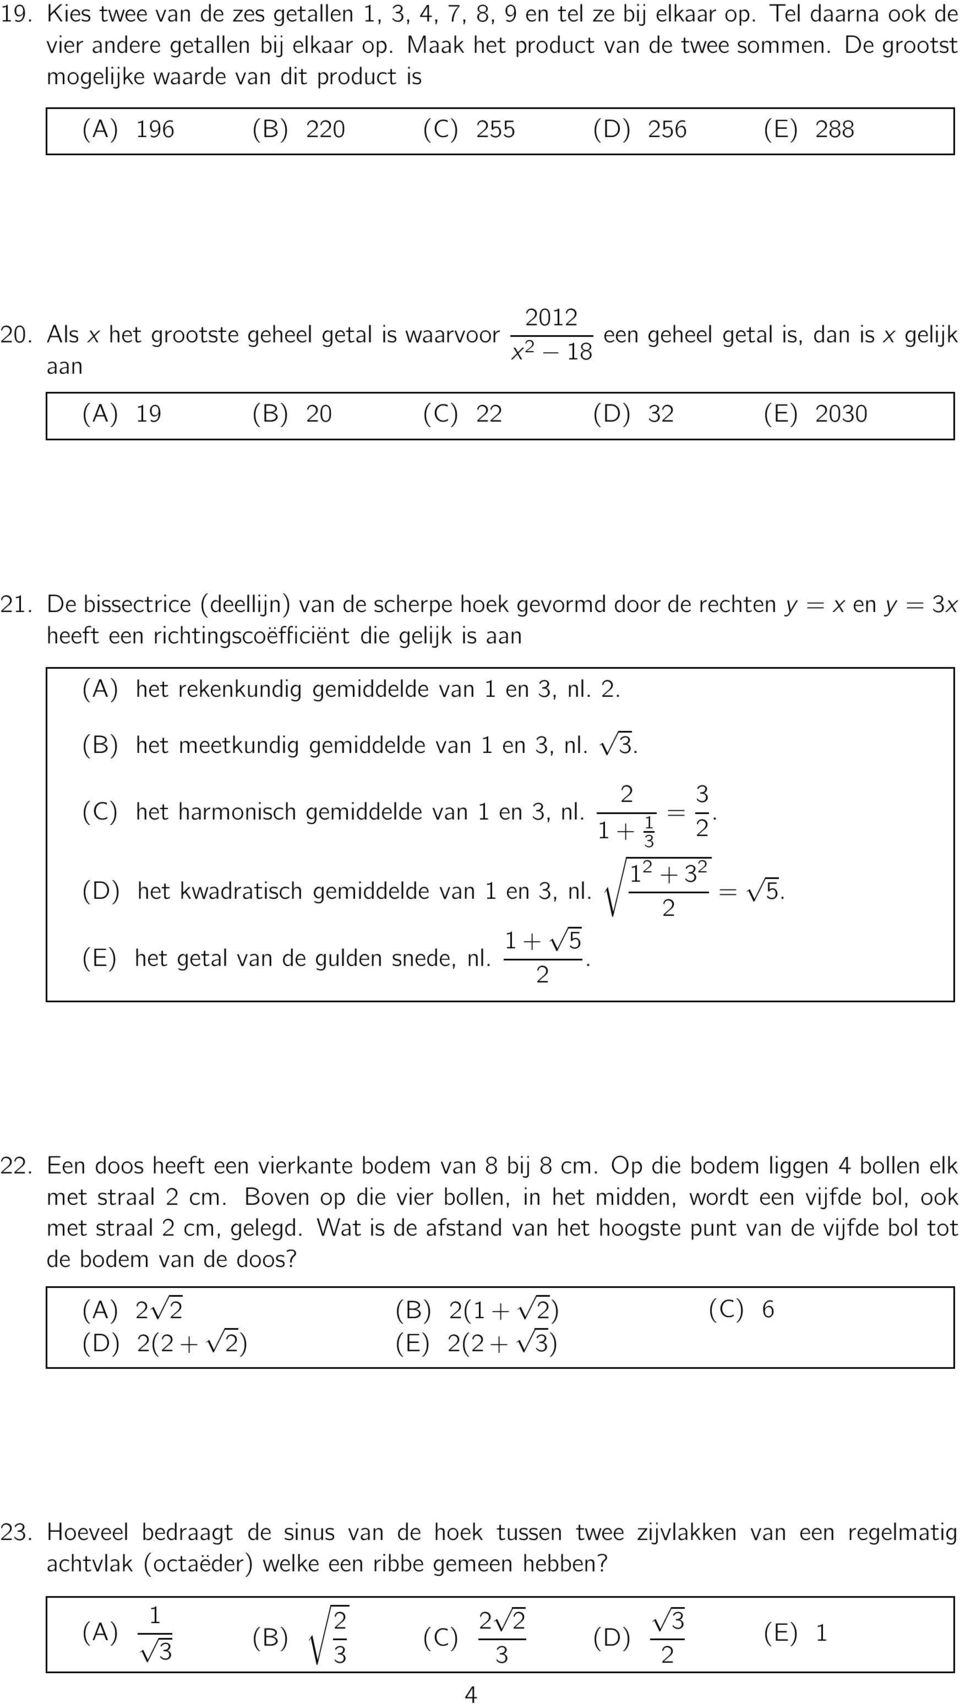 Debissectrice(deellijn)vandescherpehoekgevormddoorderechteny=xeny=x heeft een richtingscoëfficiënt die gelijk is aan () hetrekenkundiggemiddeldevan1en,nl.. () hetmeetkundiggemiddeldevan1en,nl.